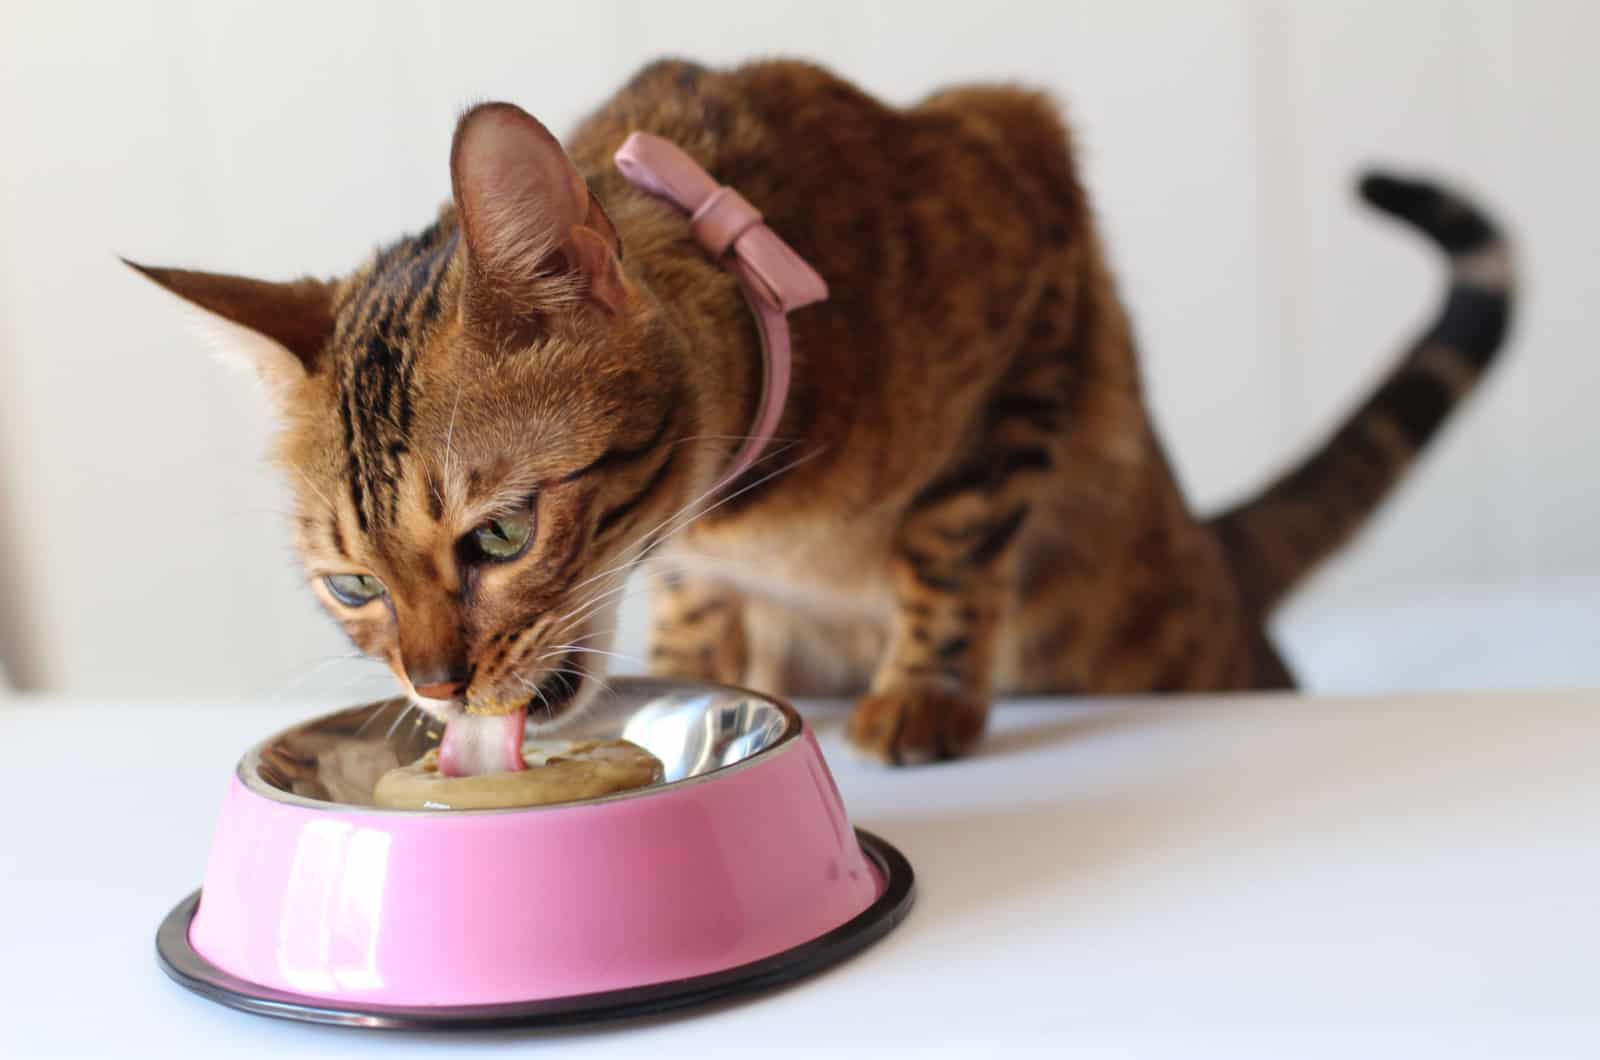 bengal cat enjoying a meal